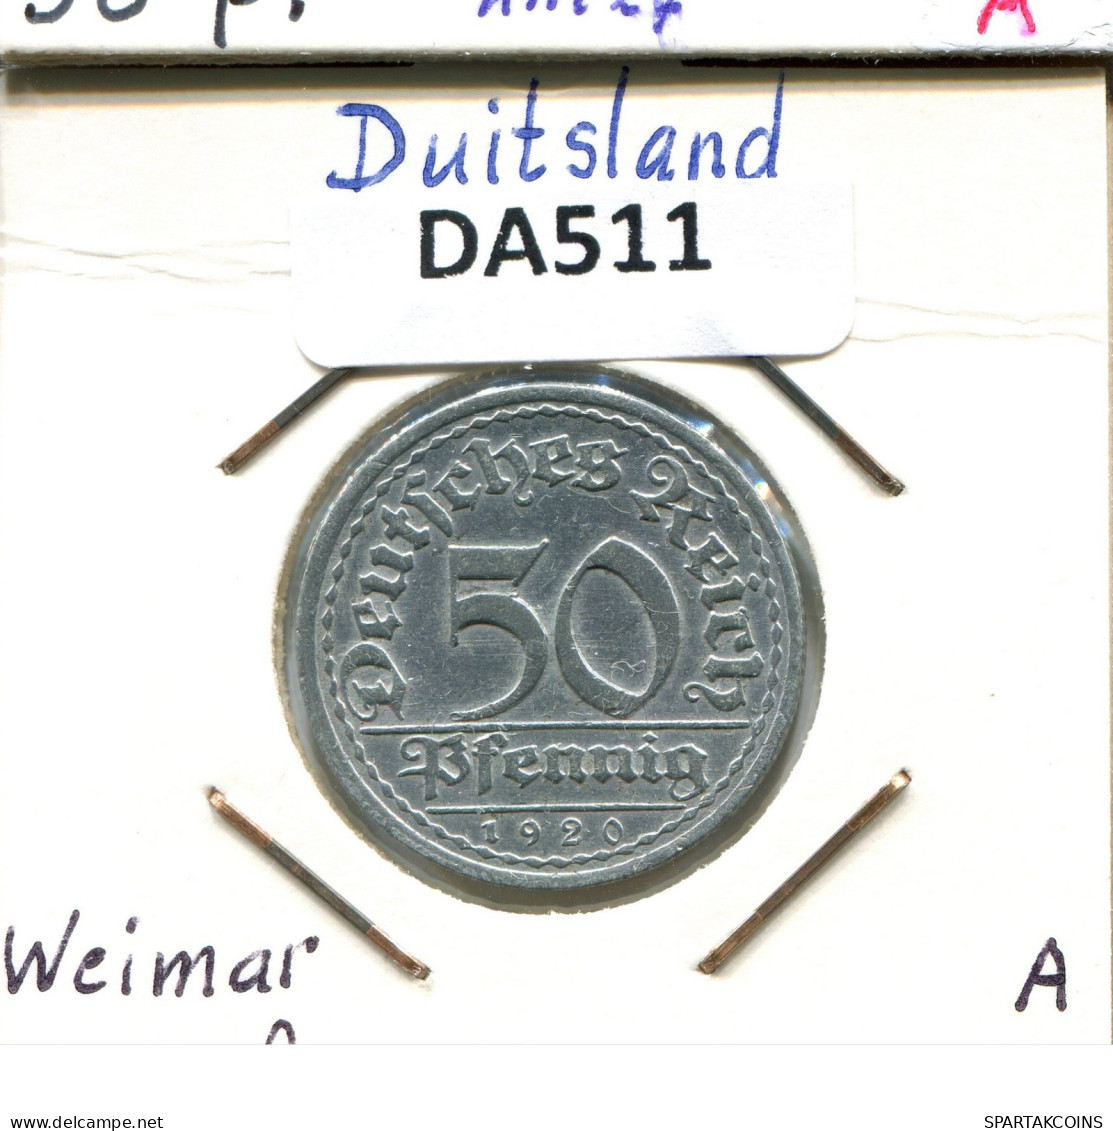 50 PFENNIG 1920 A DEUTSCHLAND Münze GERMANY #DA511.2.D.A - 50 Rentenpfennig & 50 Reichspfennig